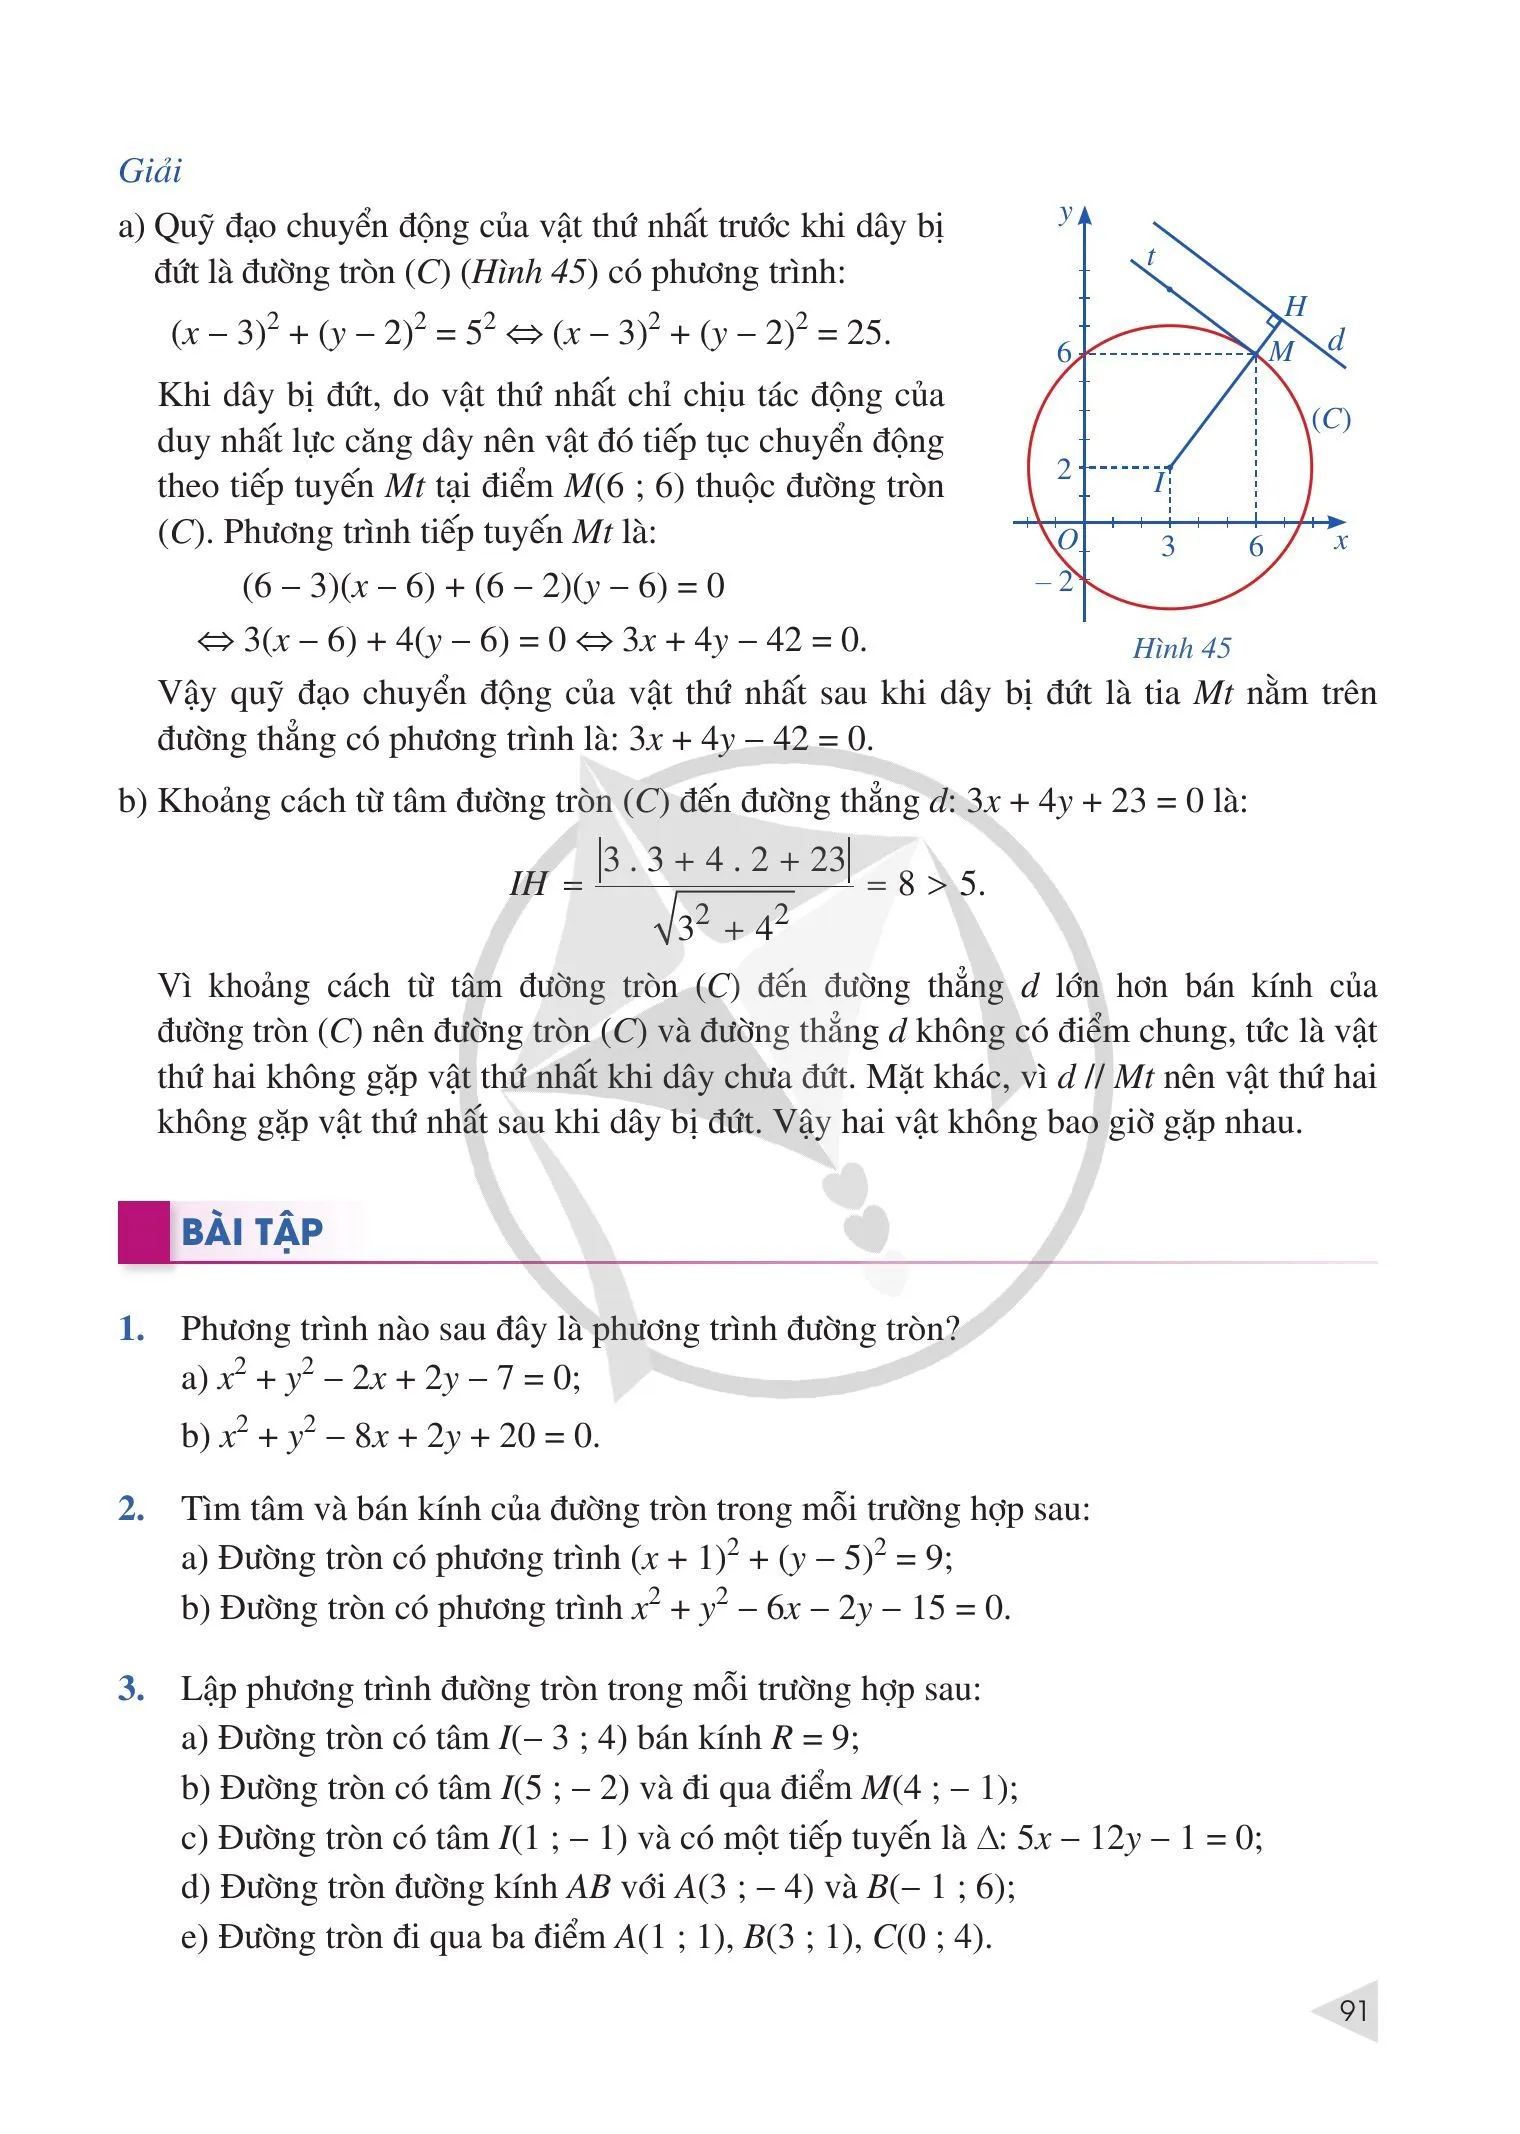 §5. Phương trình đường tròn